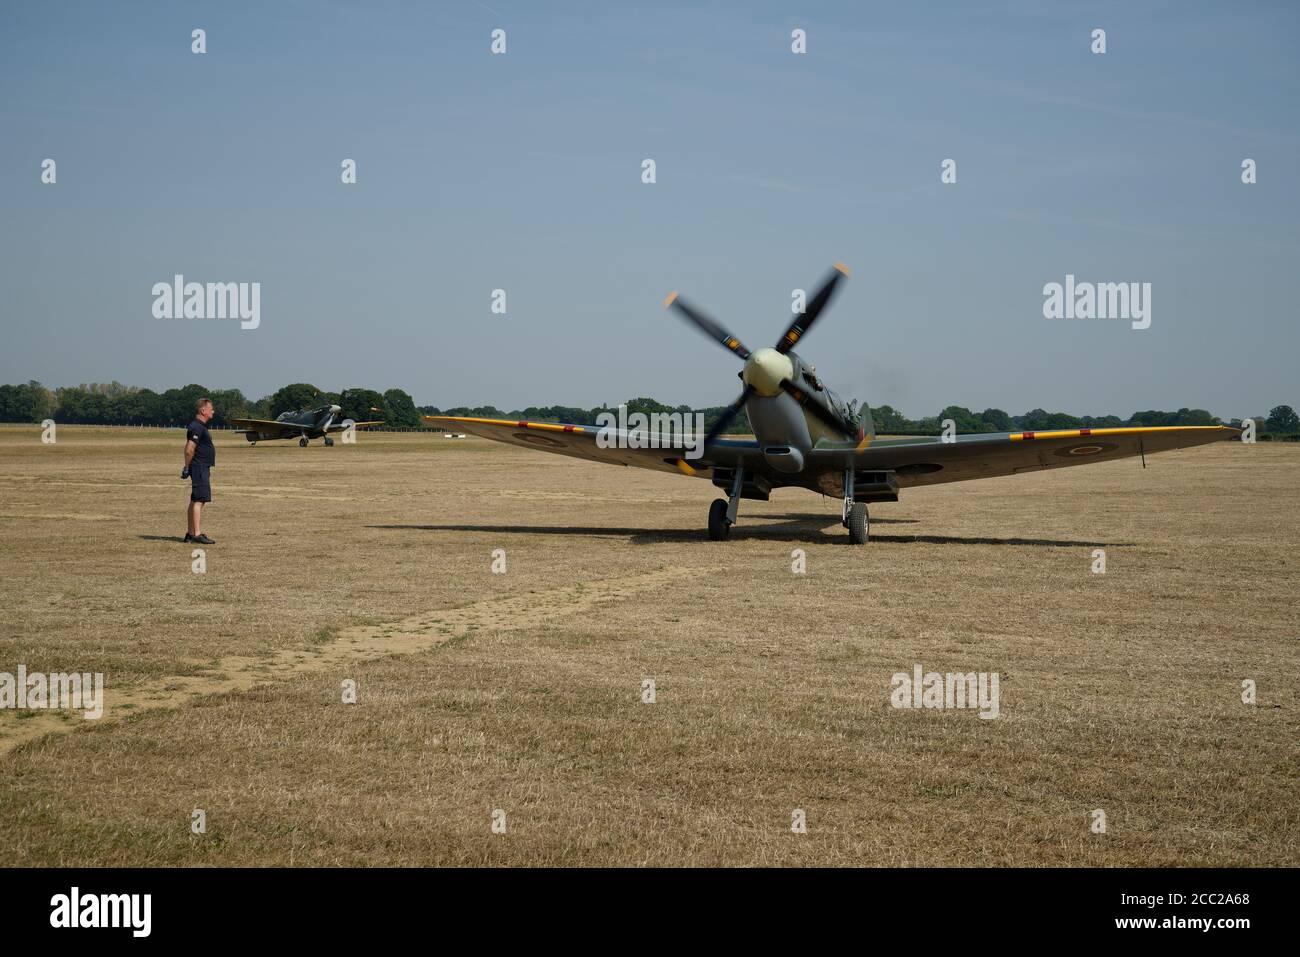 Une paire d'avions de chasse Spitfire à l'aérodrome de Headcorn dans le Kent. Piste de roulement après l'atterrissage. Banque D'Images